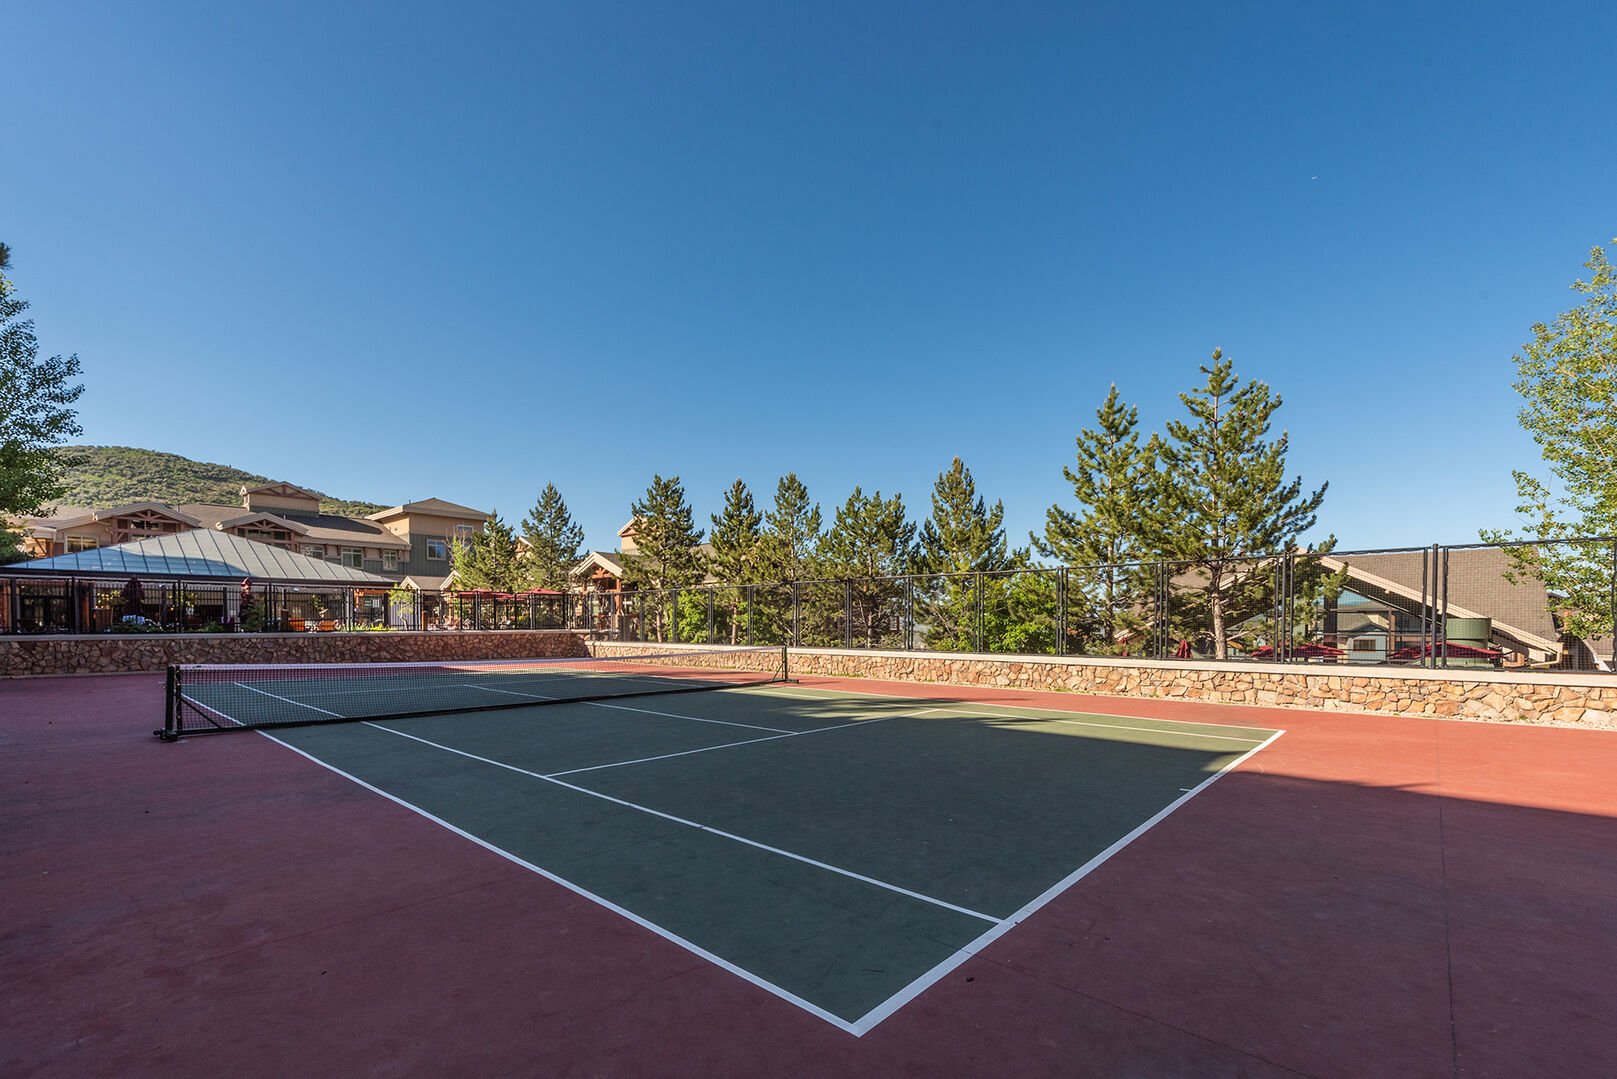 Westgate Resort tennis courts.